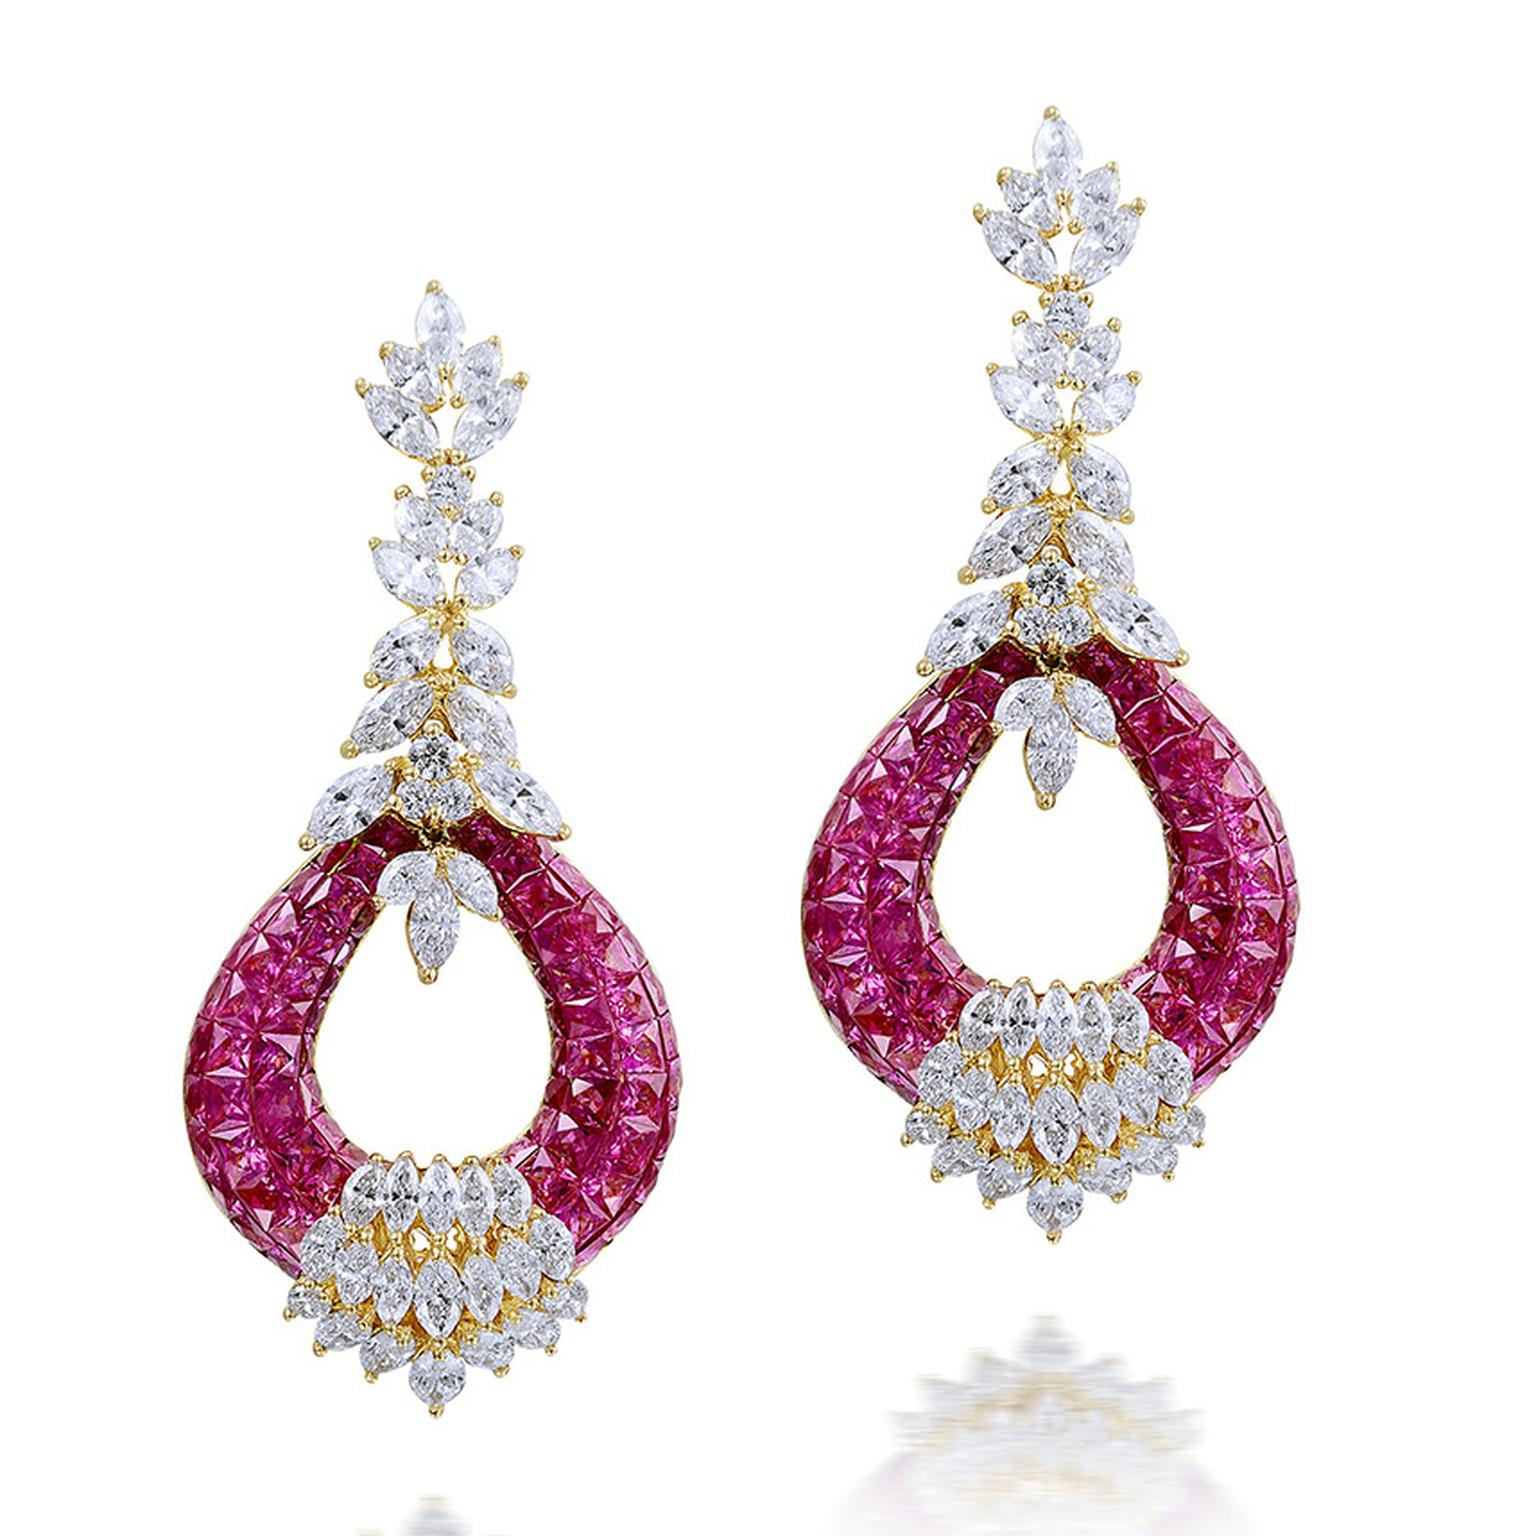 HP12Farah Khan earrings